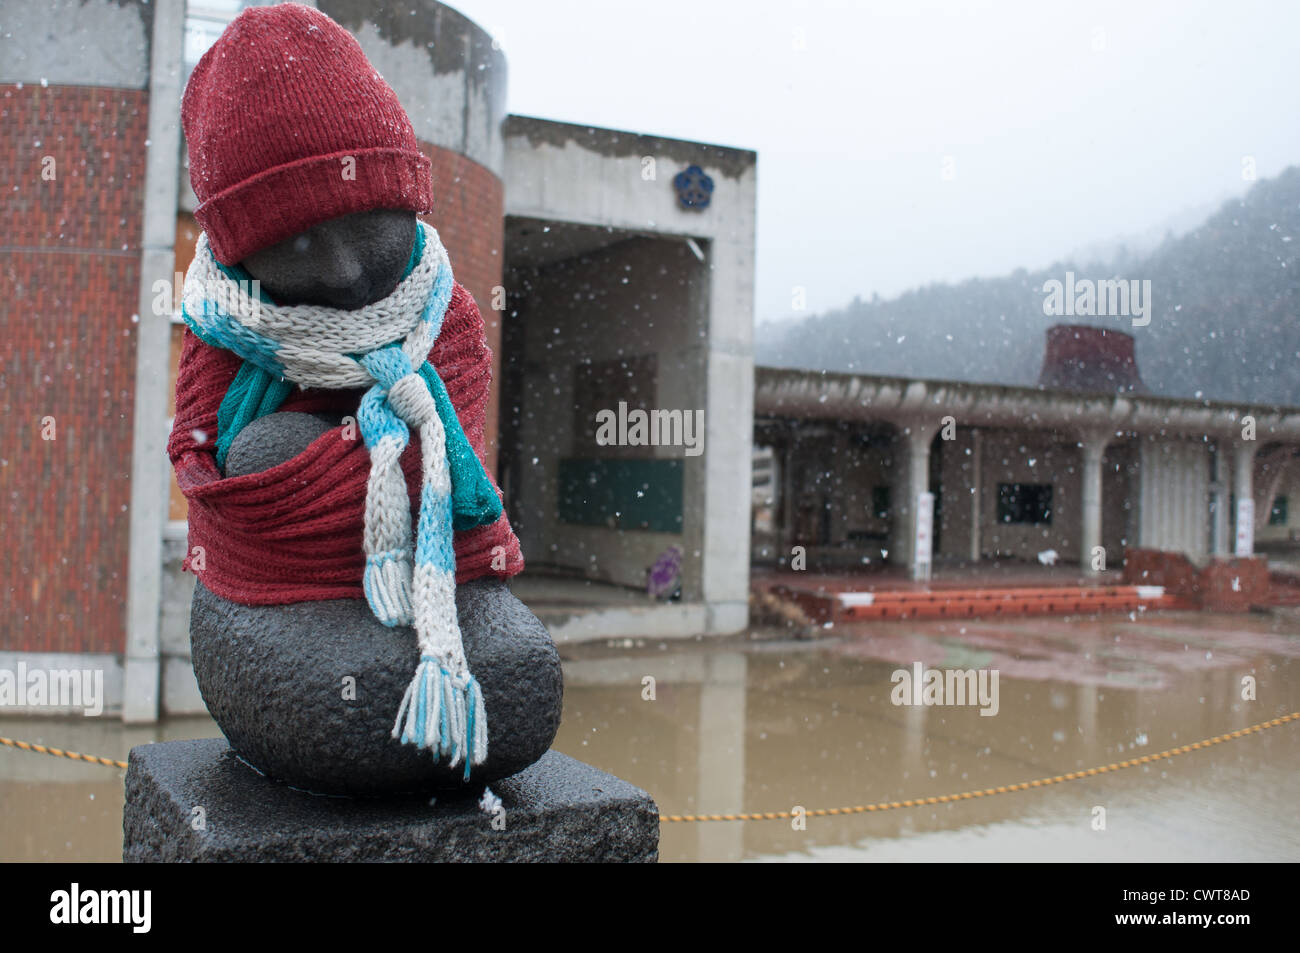 Le Japon un an après la catastrophe. Une école à ishinomaki, où plusieurs étudiants ont été tués par le tsunami. Banque D'Images